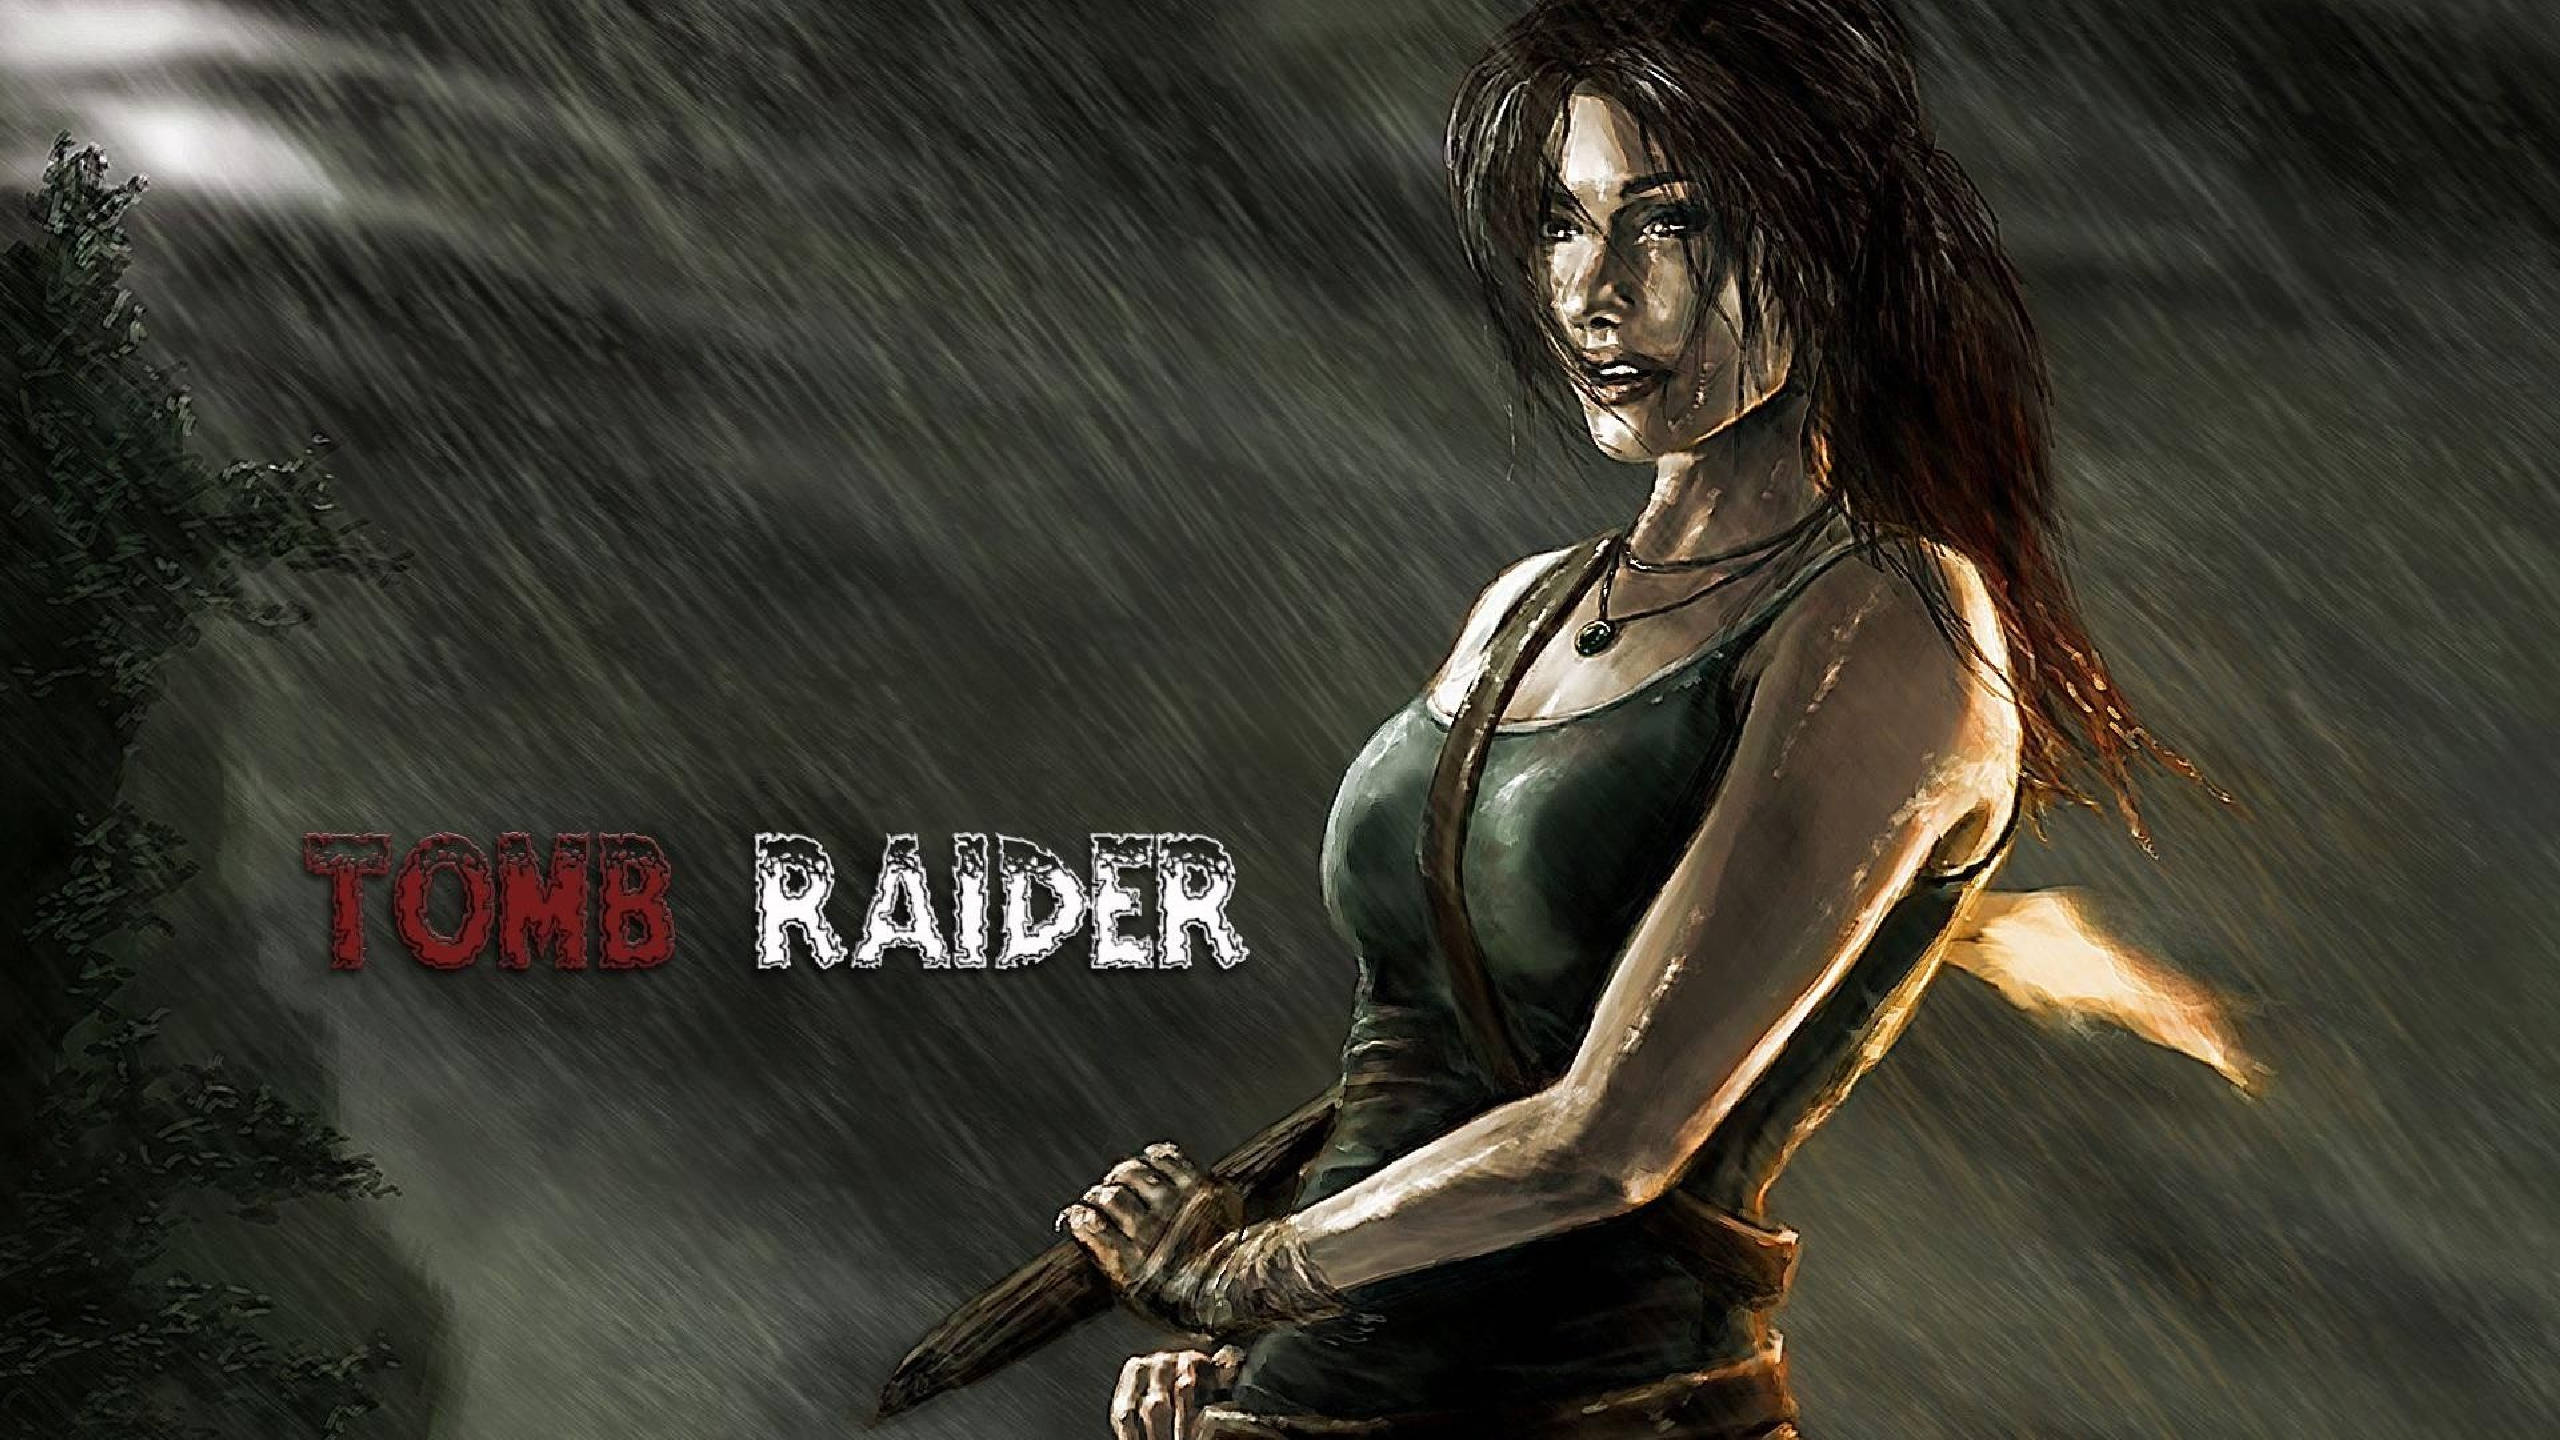 2560 X 1440 Tomb Raider Digital Painting Wallpaper